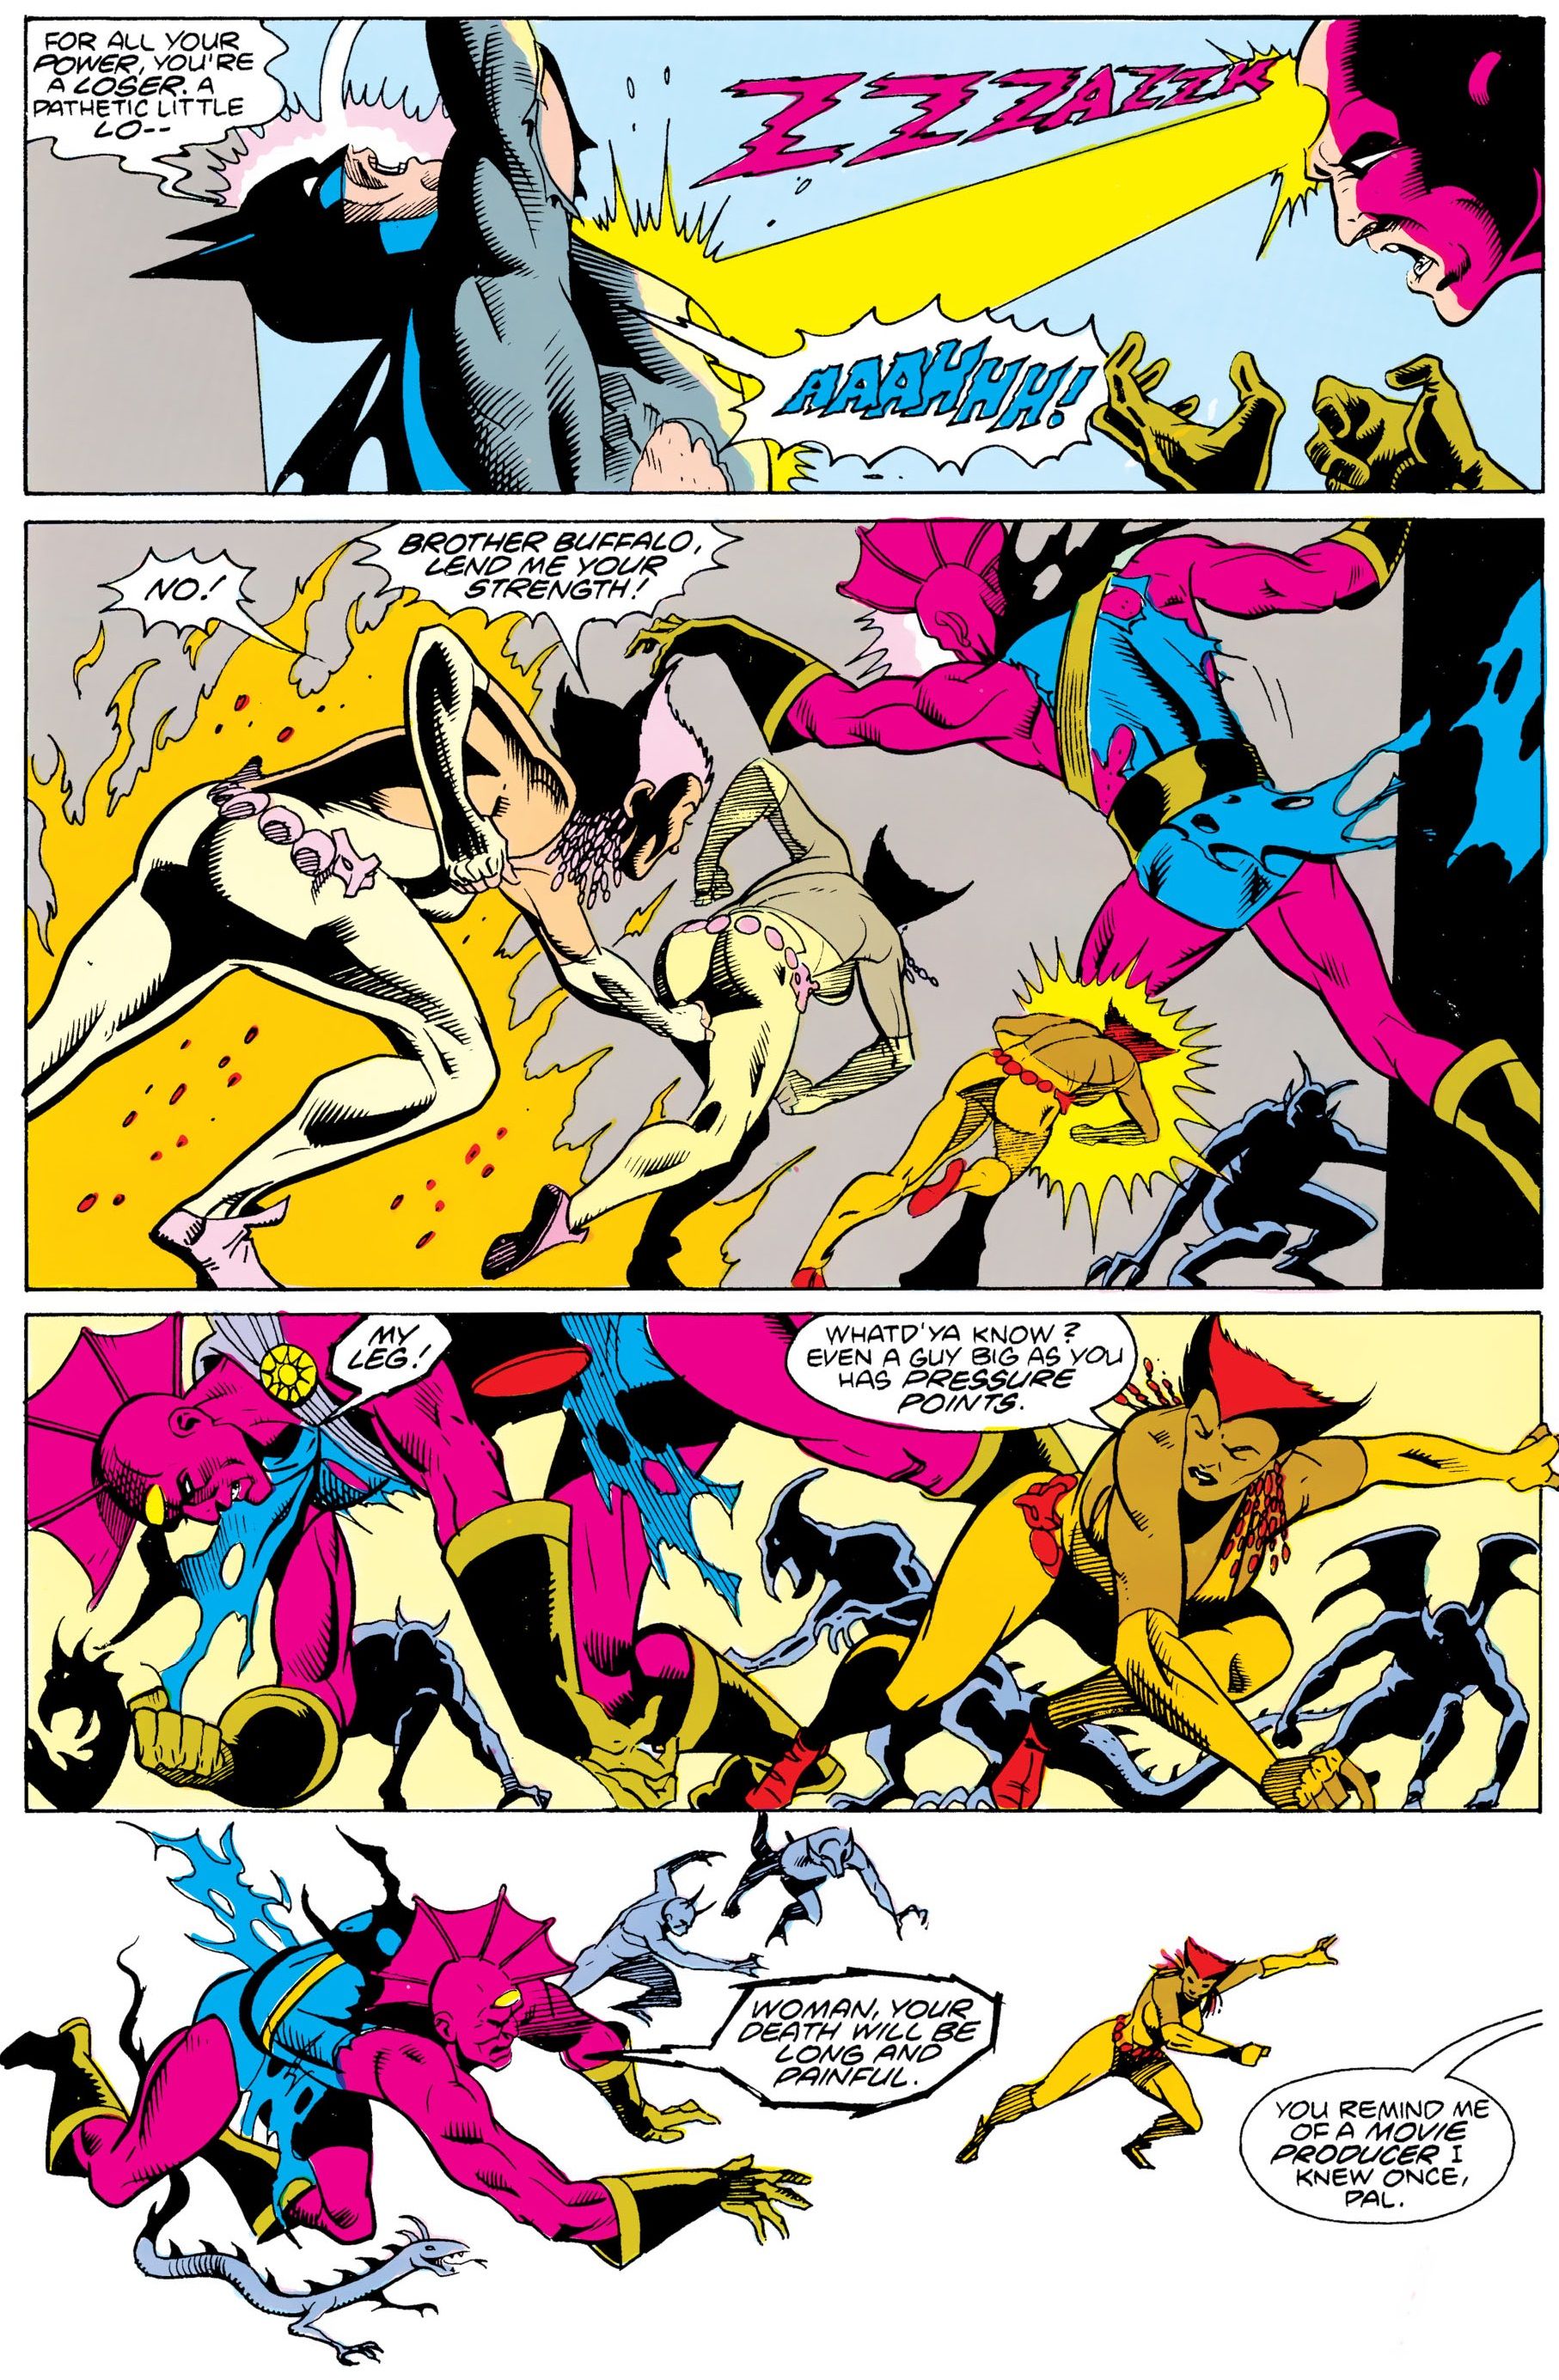 Когда Бэтмен сражался с Десперо один на один, чтобы спасти мир